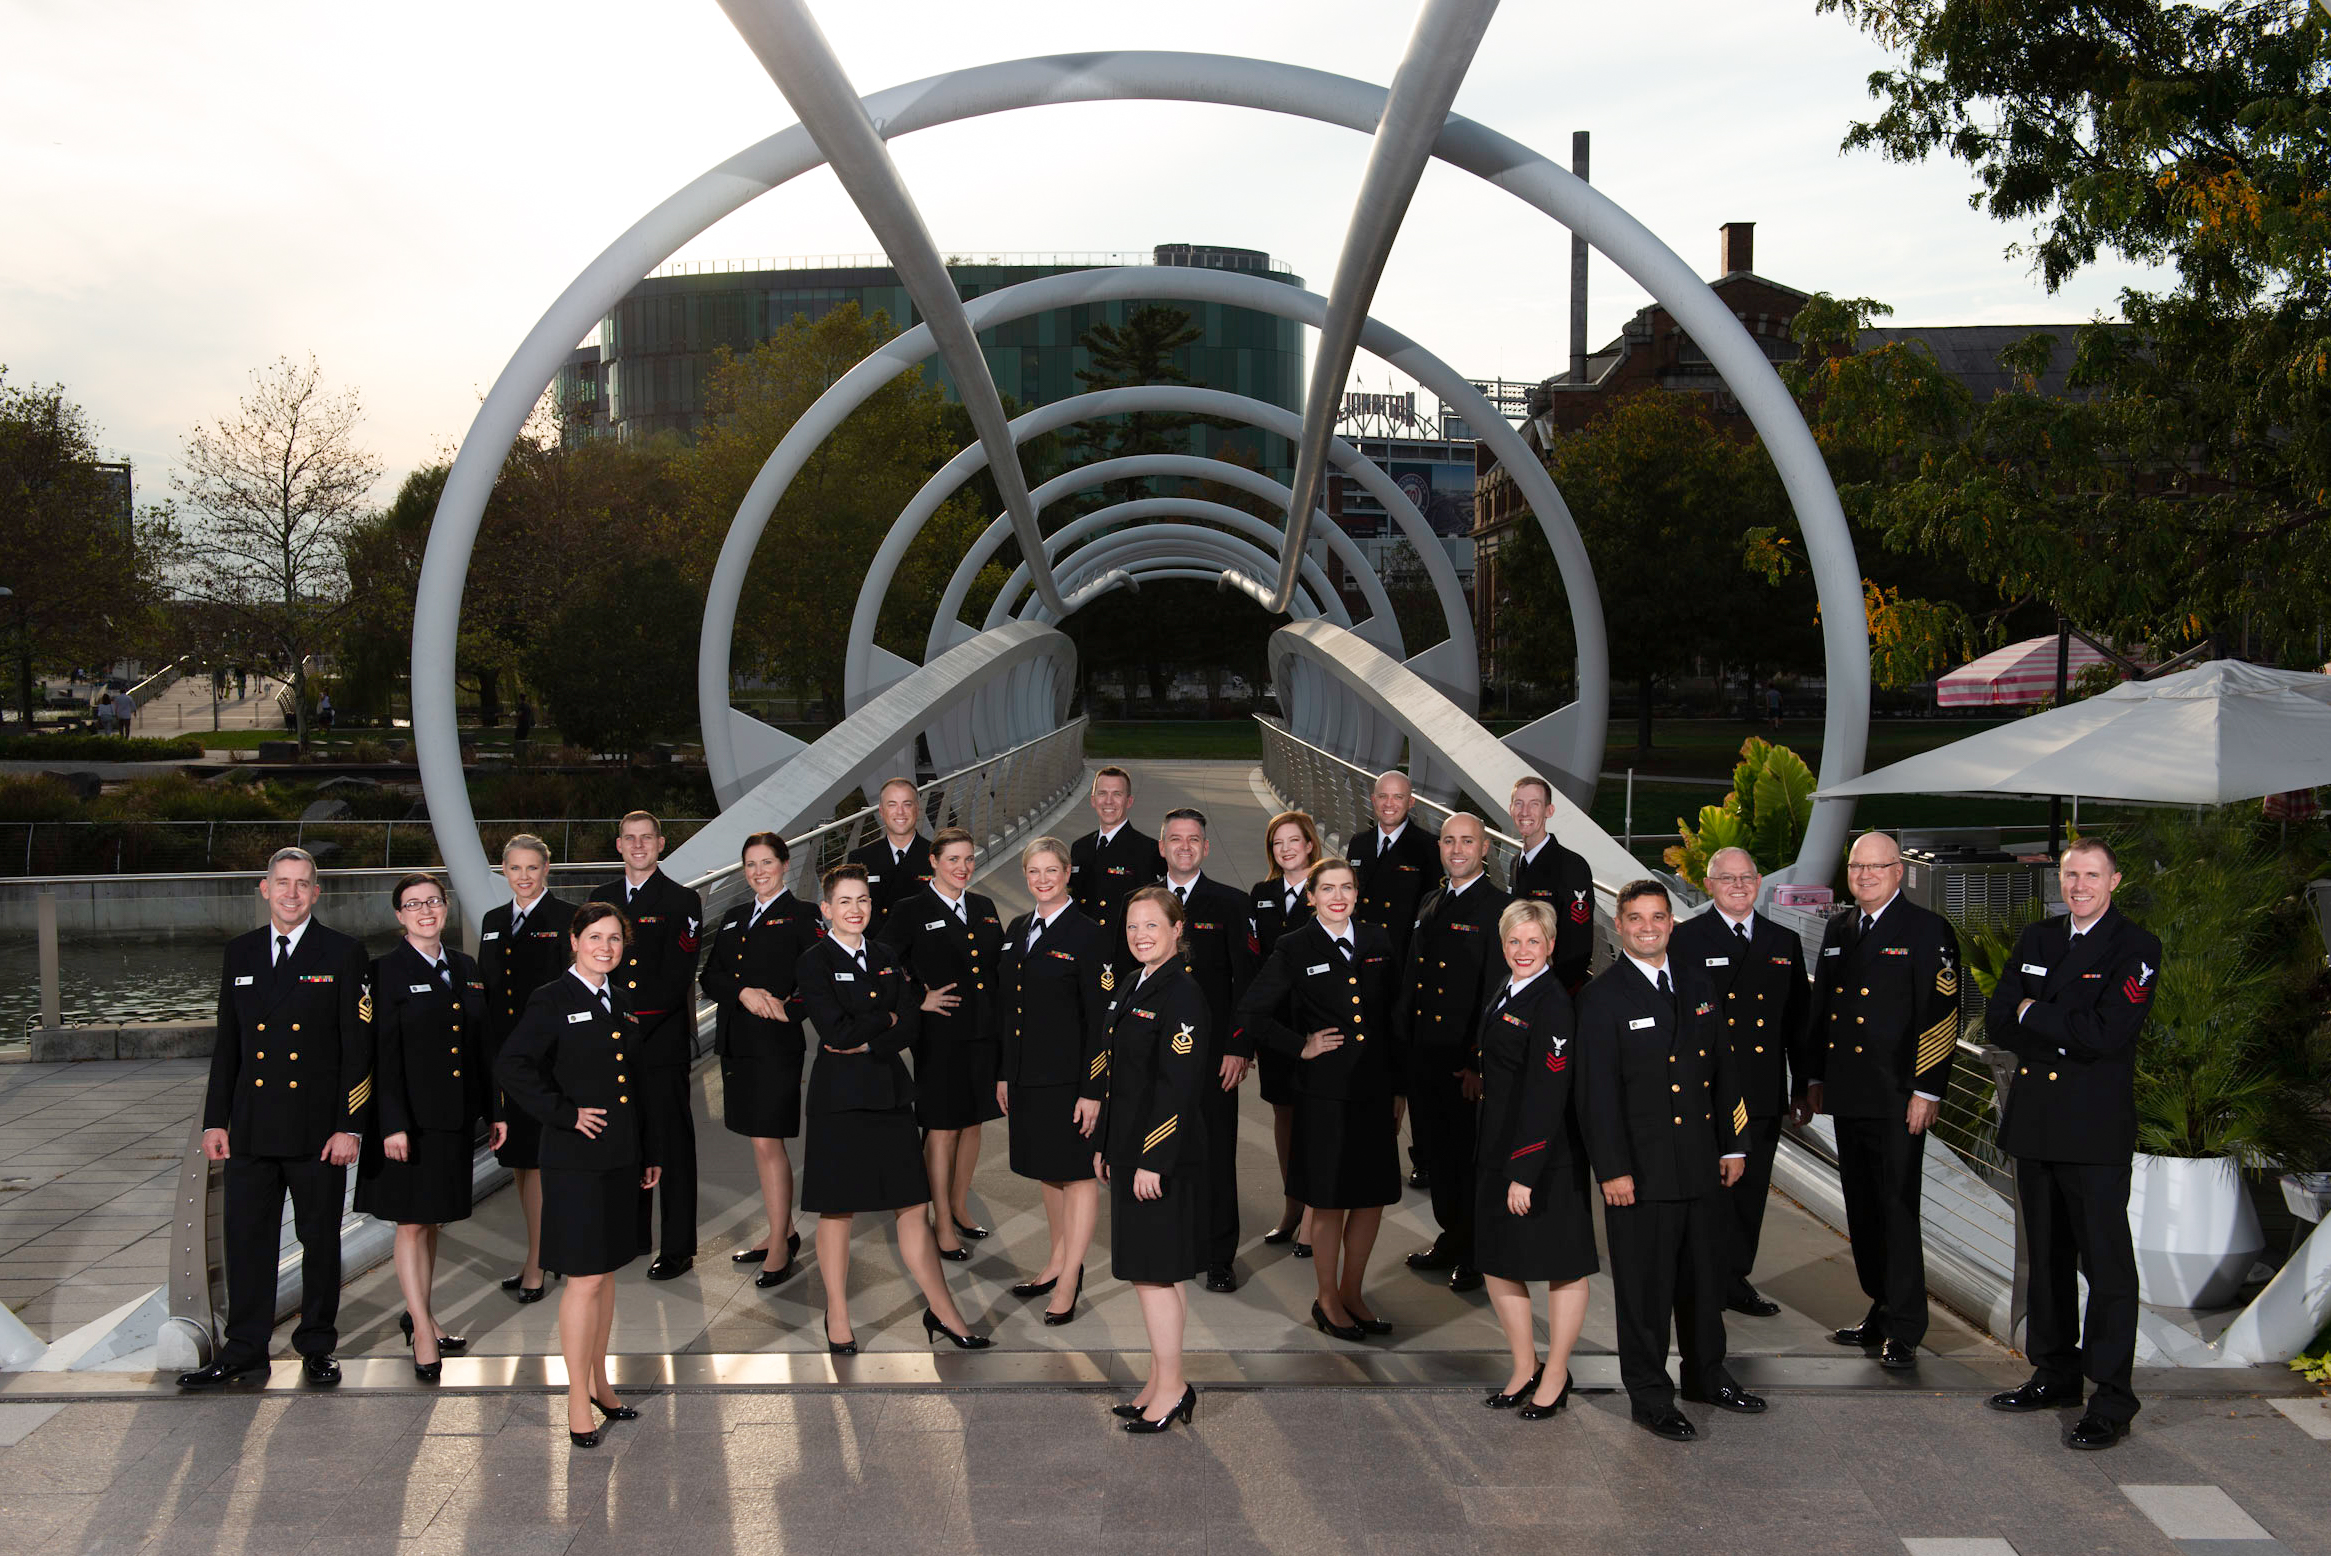 The U.S. Navy Band Sea Chanters chorus. Image credit: U.S. Navy Band